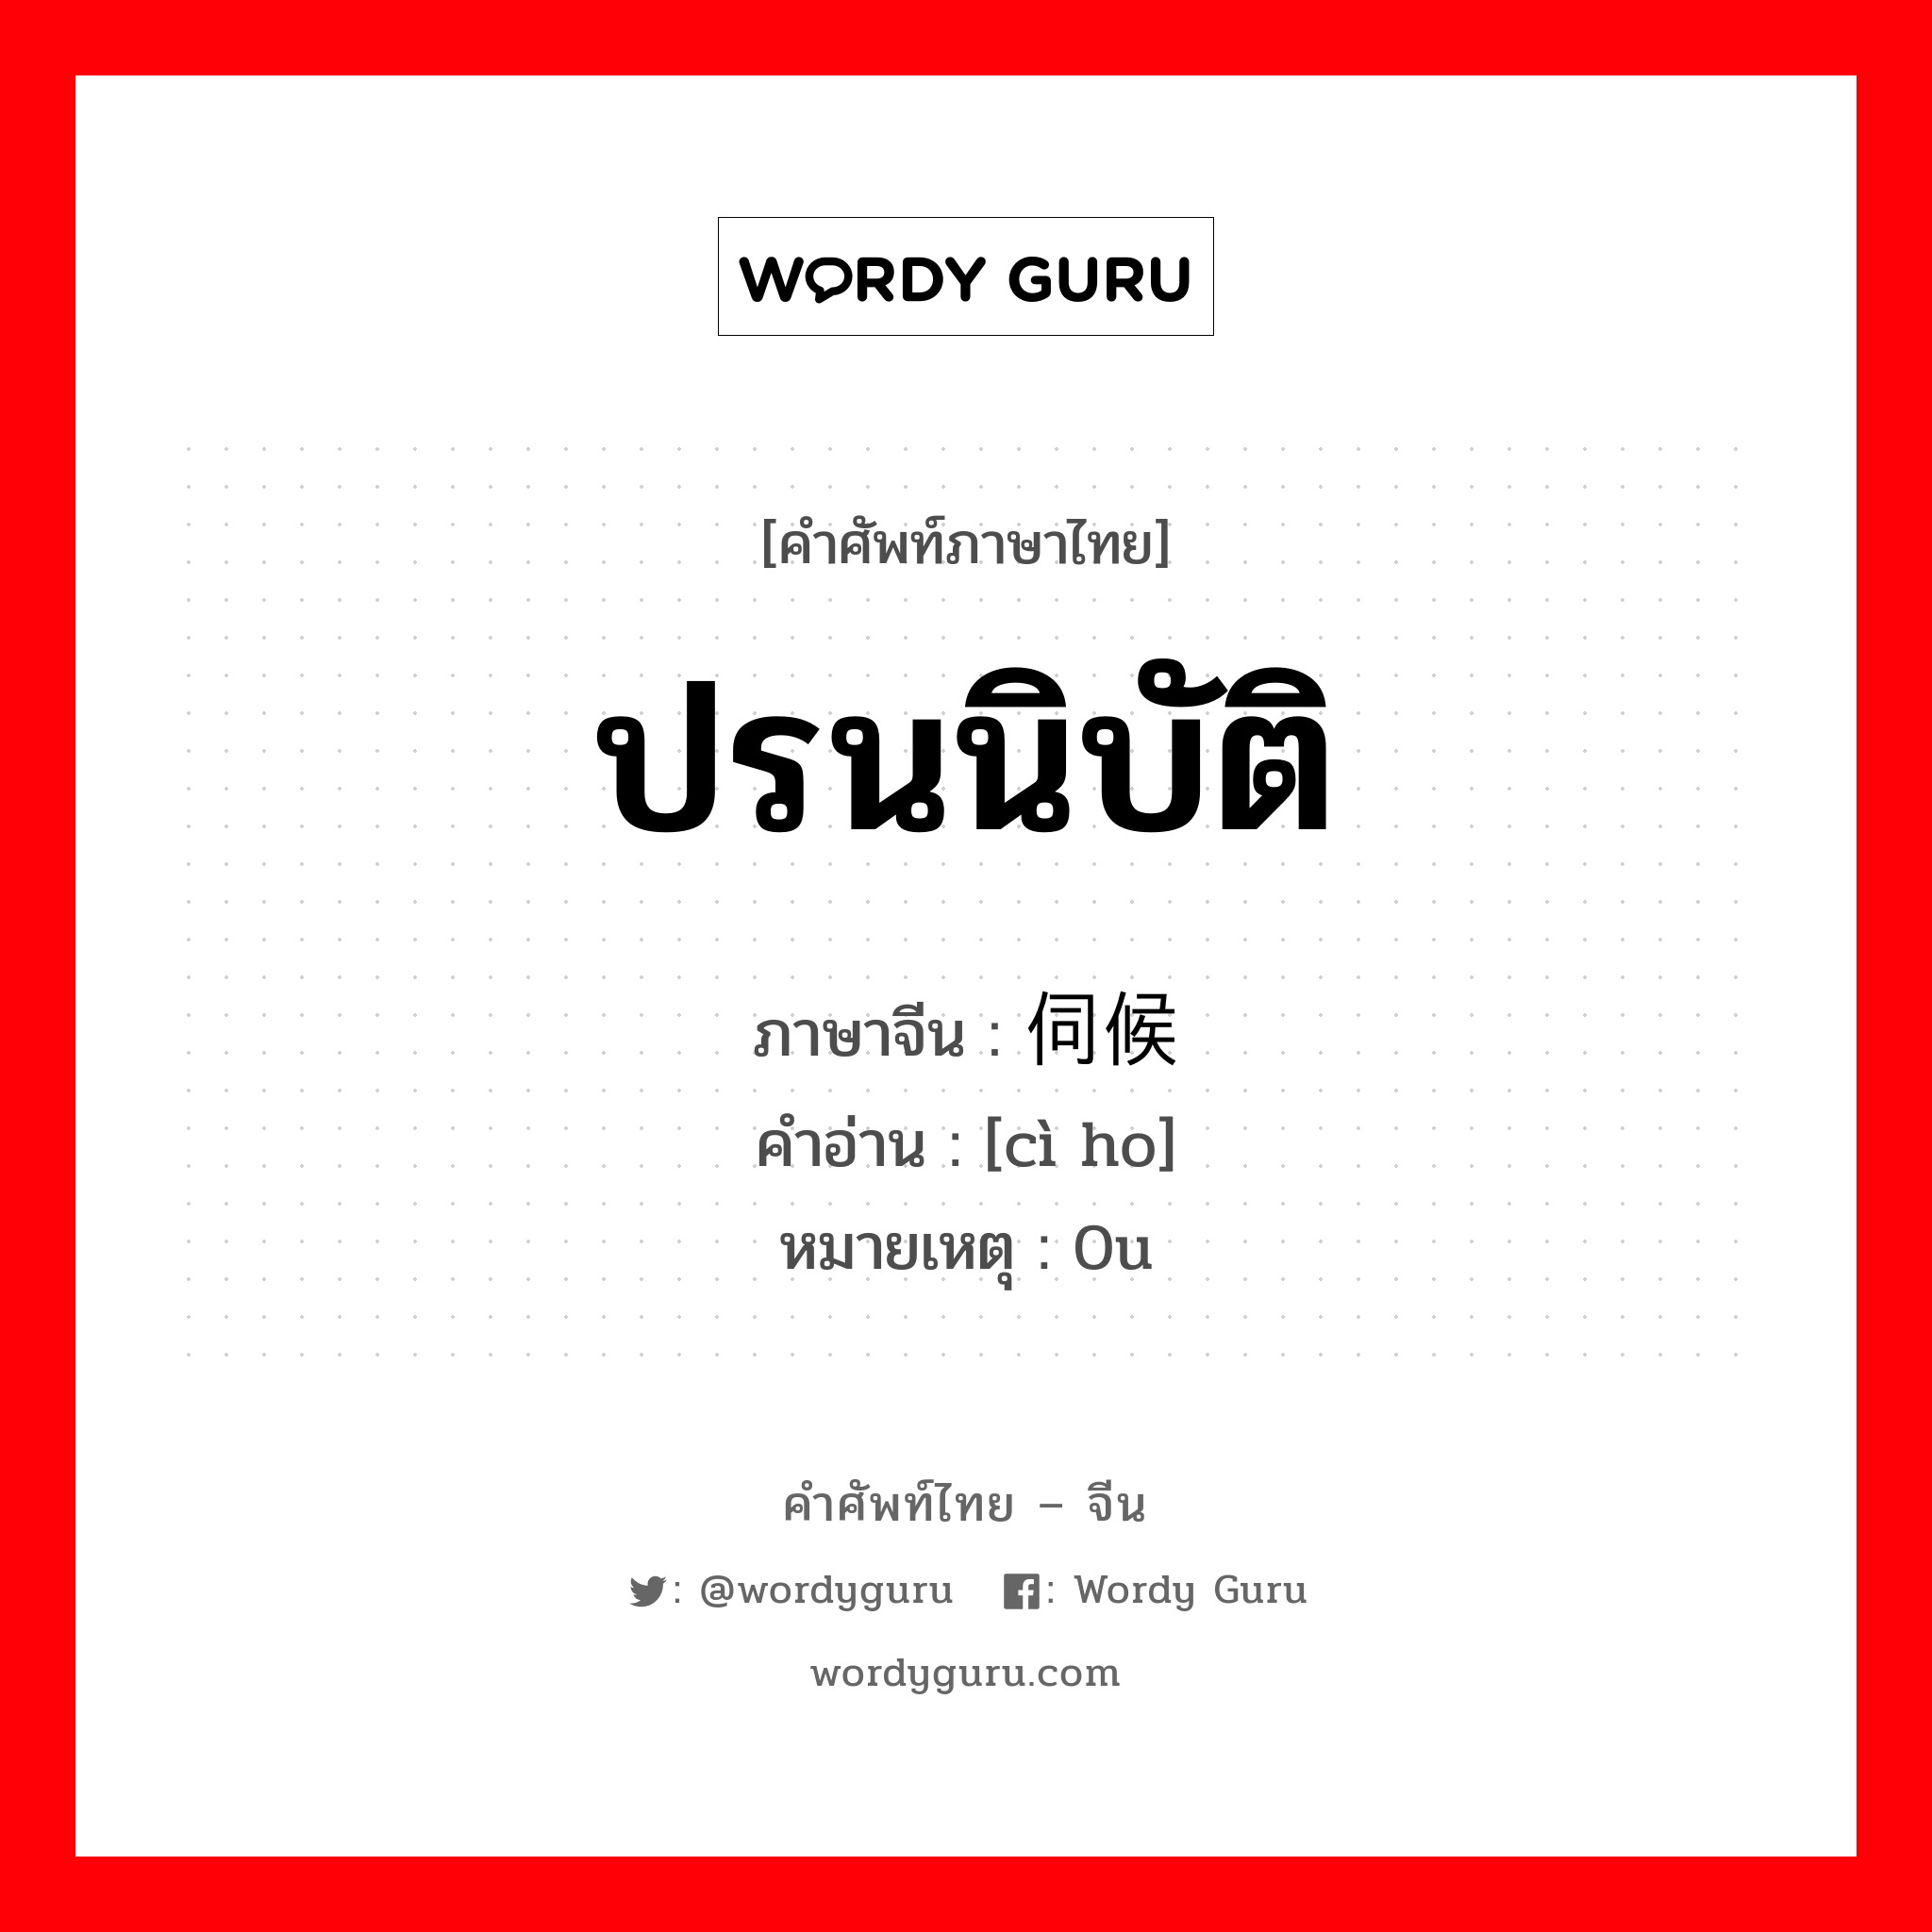 ปรนนิบัติ ภาษาจีนคืออะไร, คำศัพท์ภาษาไทย - จีน ปรนนิบัติ ภาษาจีน 伺候 คำอ่าน [cì ho] หมายเหตุ 0u